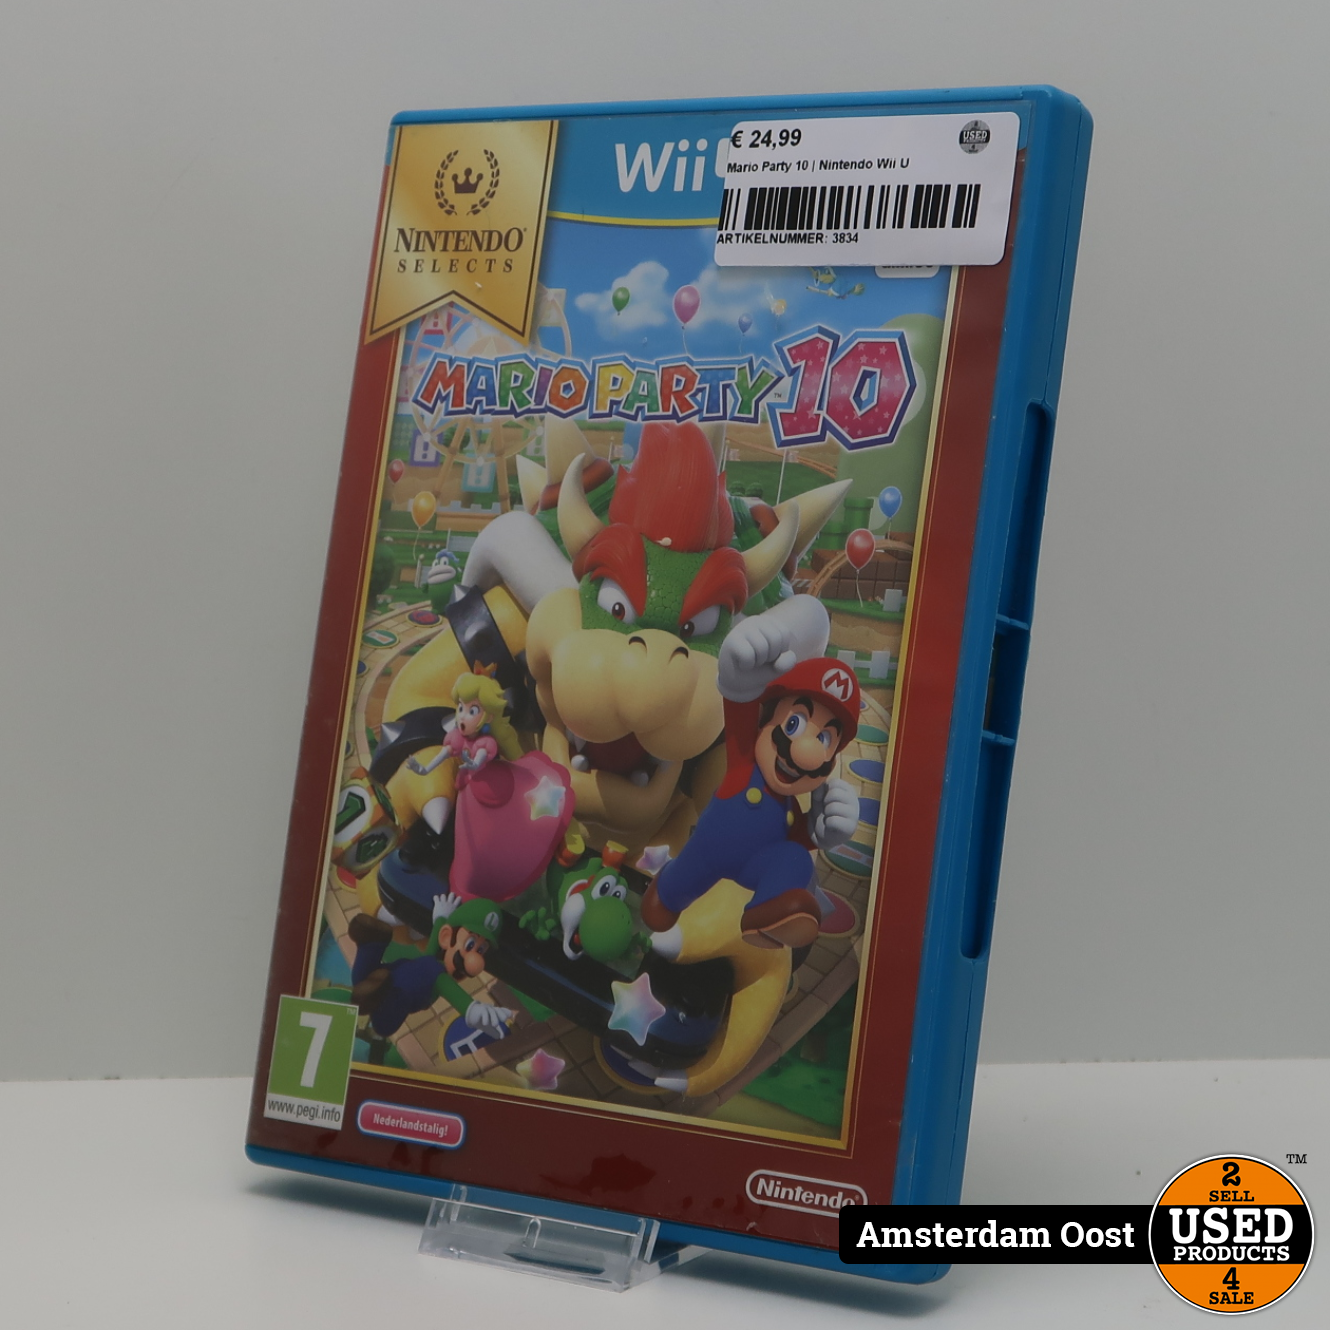 helder scheidsrechter Haat Mario Party 10 | Nintendo Wii U - Used Products Amsterdam Oost